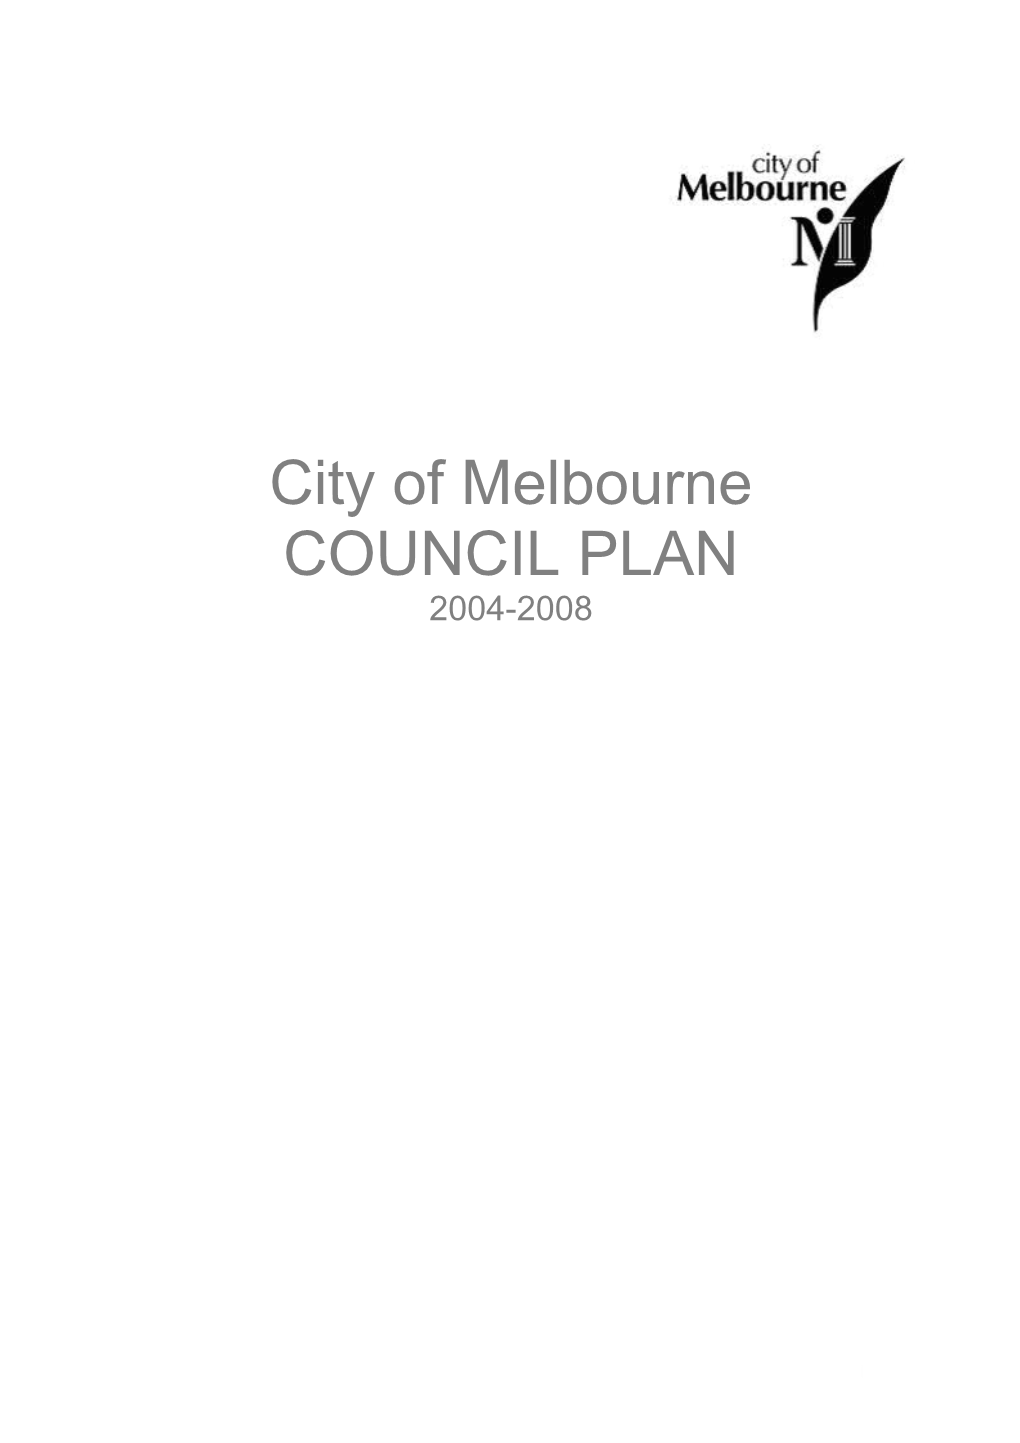 City of Melbournecouncil PLAN